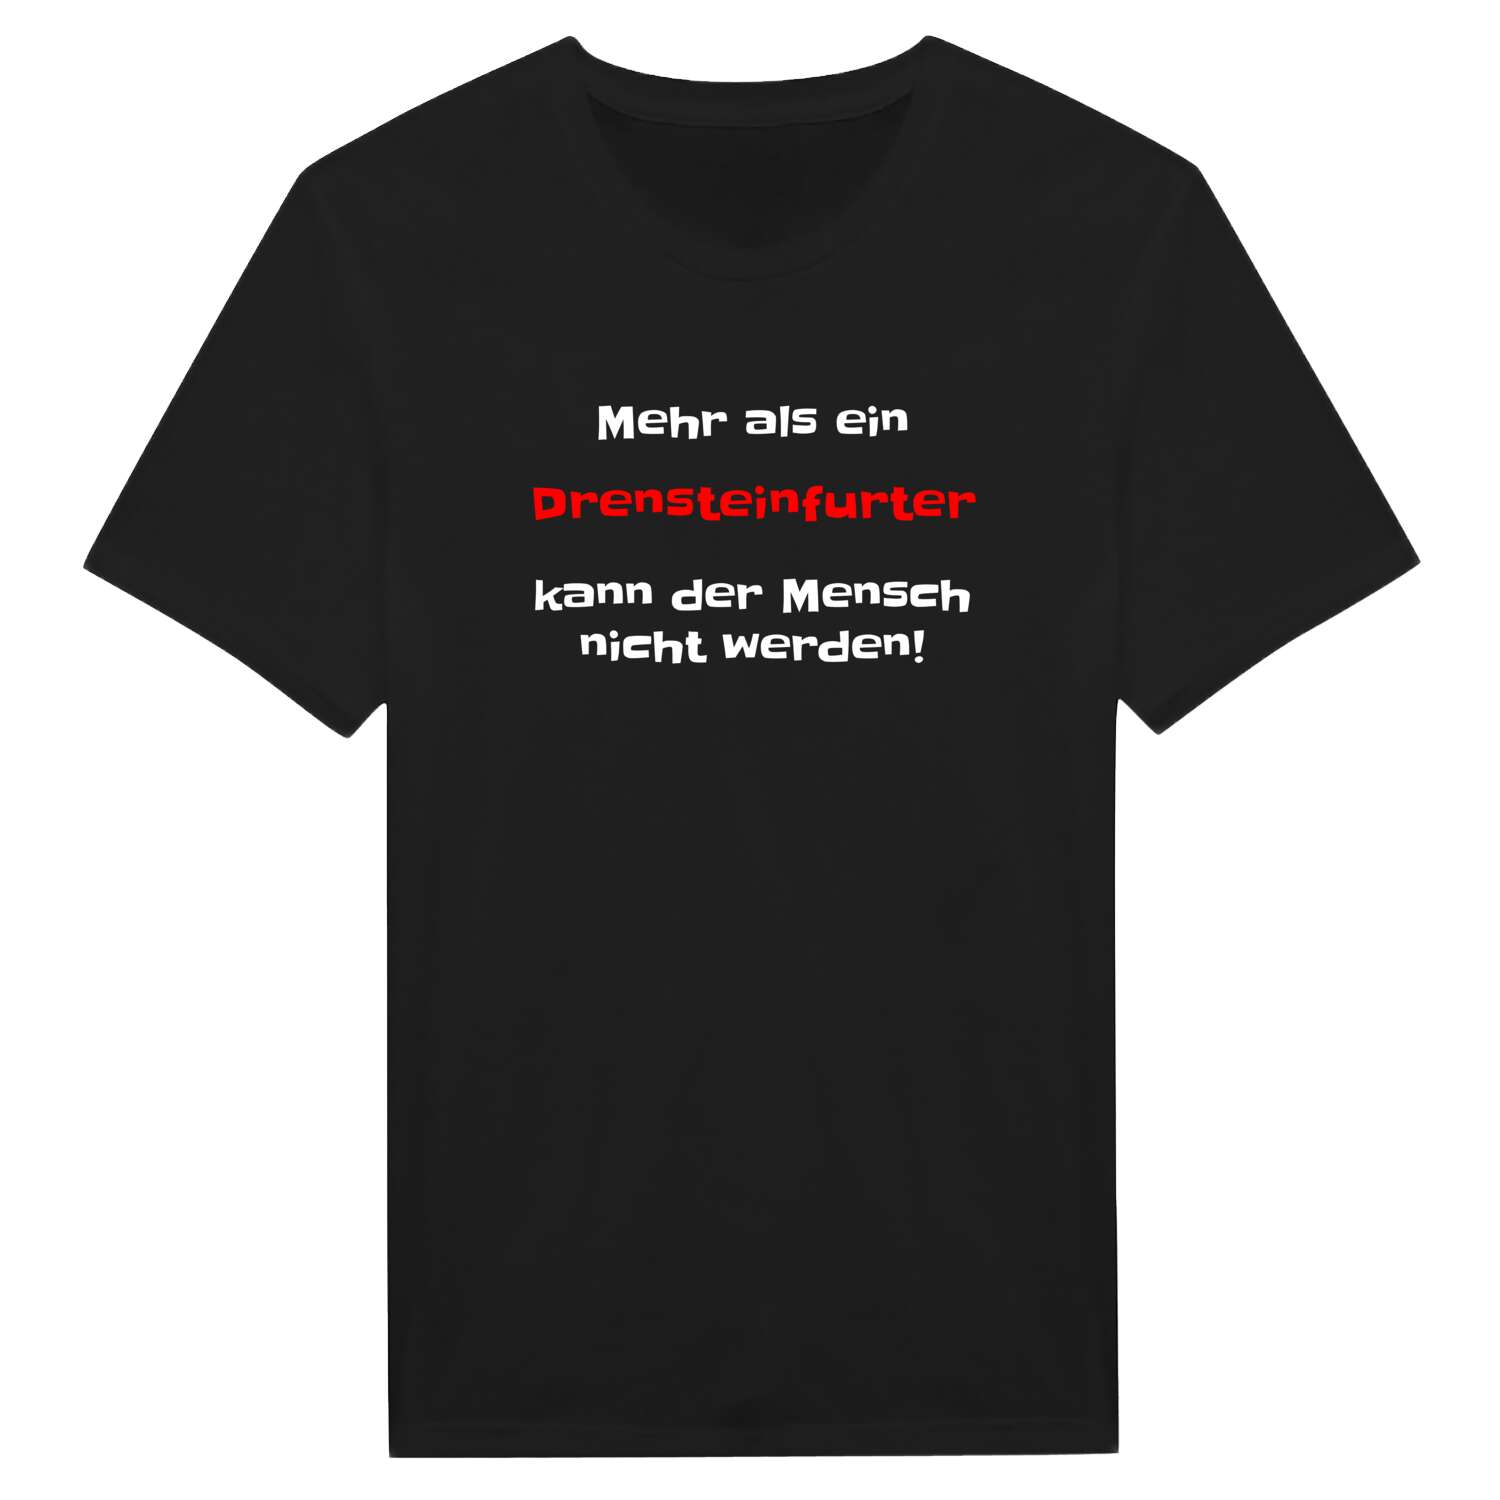 Drensteinfurt T-Shirt »Mehr als ein«